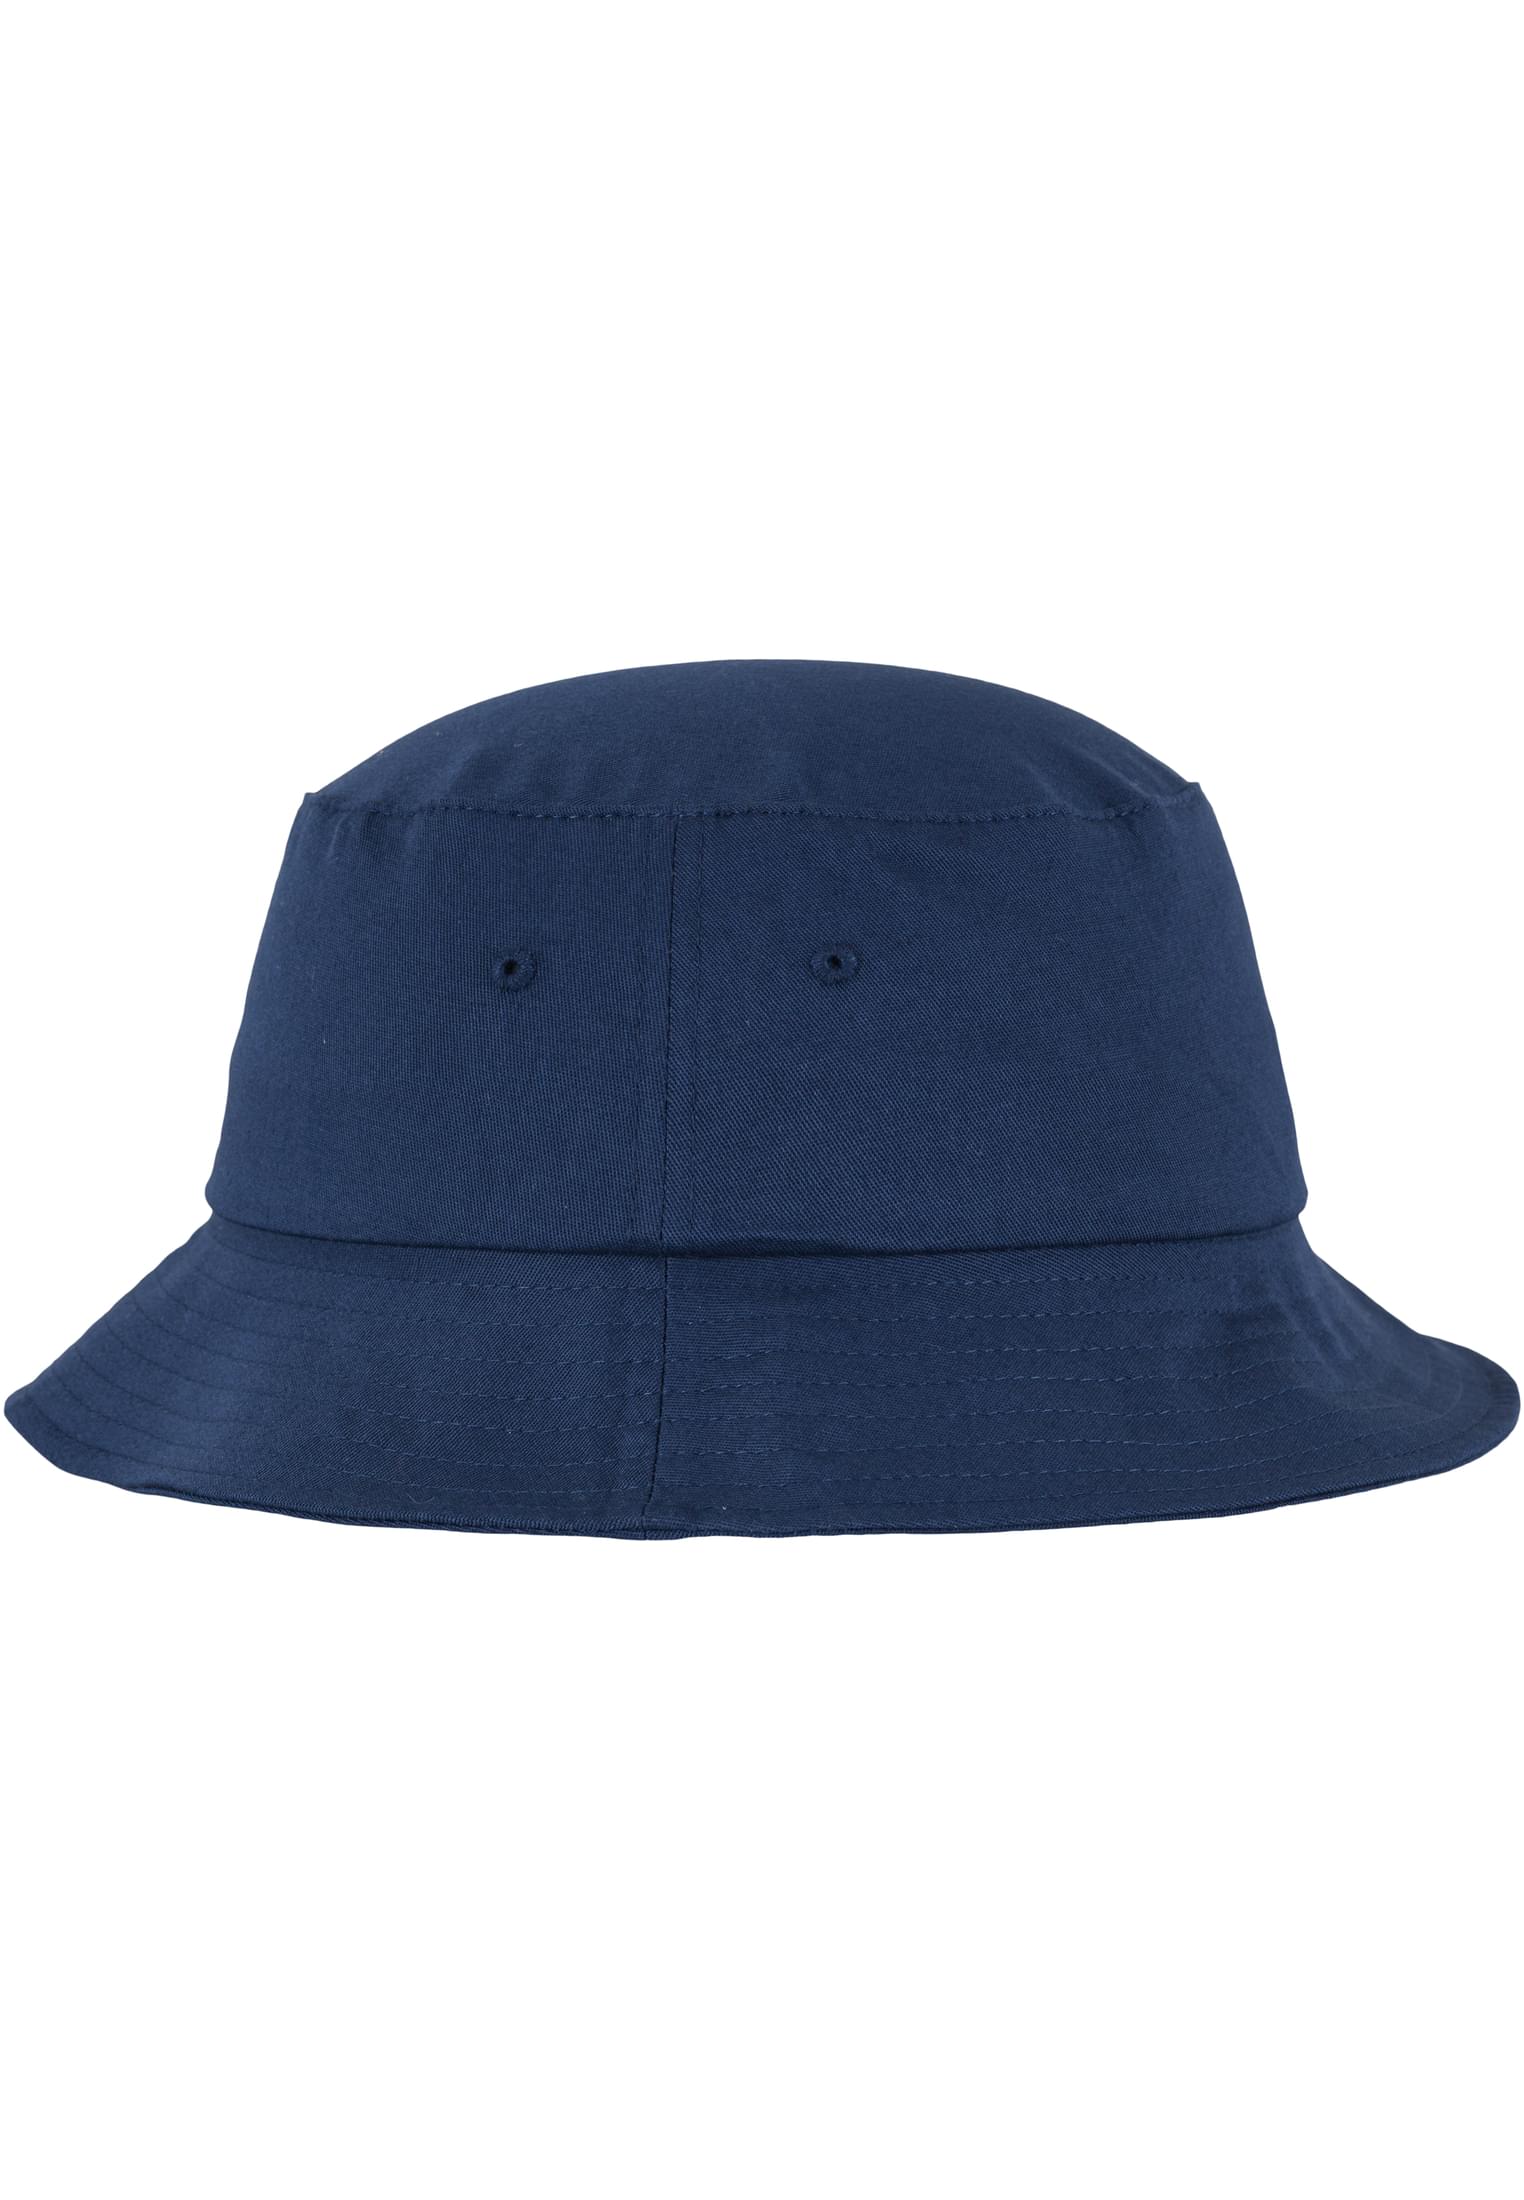 Hat-5003 Cotton Flexfit Twill Bucket